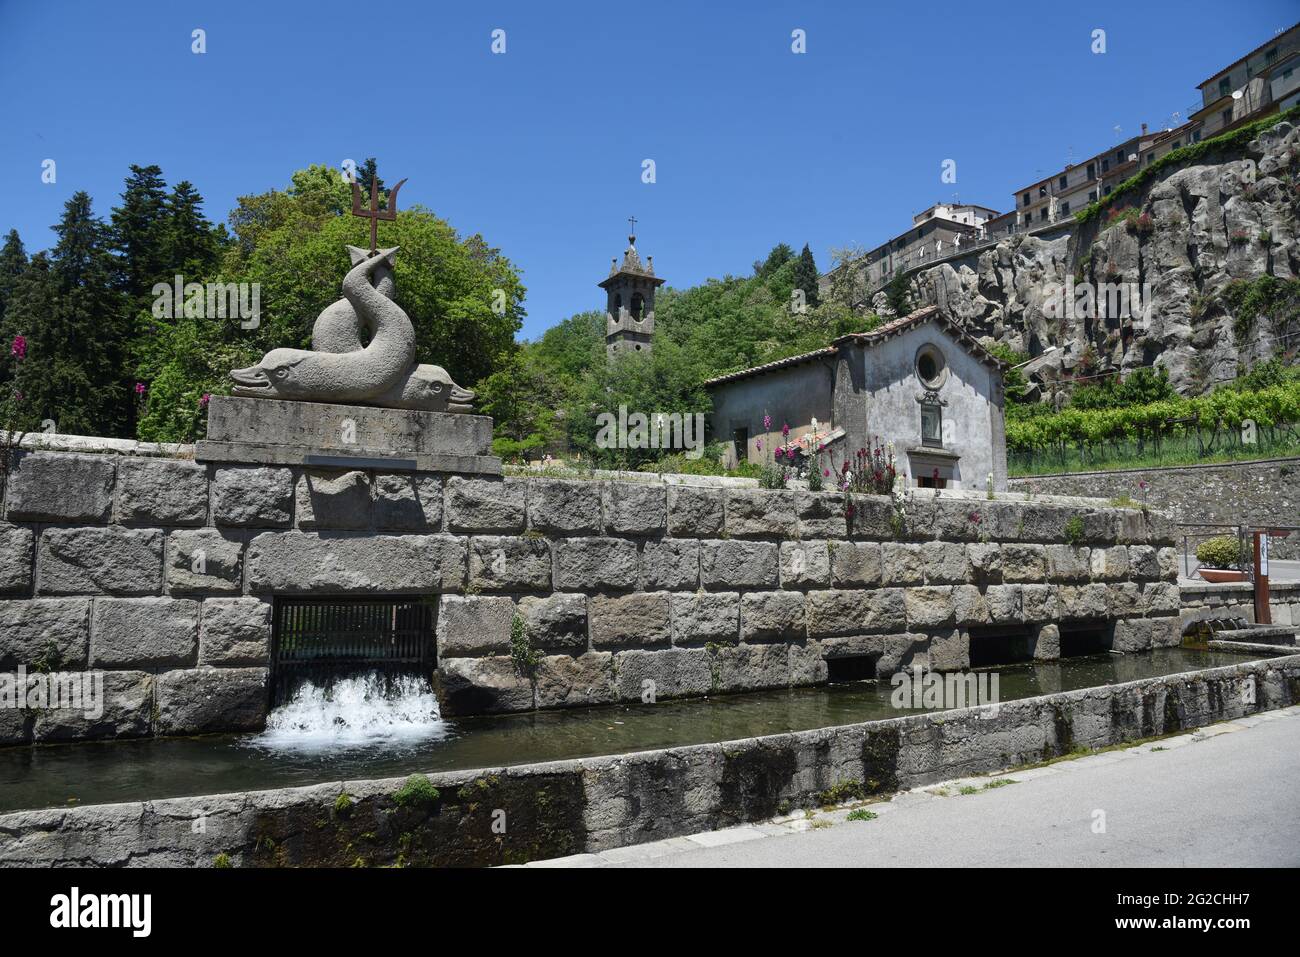 Sbocco d'acqua dalla 'Peschiera' a Santa Fiora (Grosseto - Italia) Stockfoto